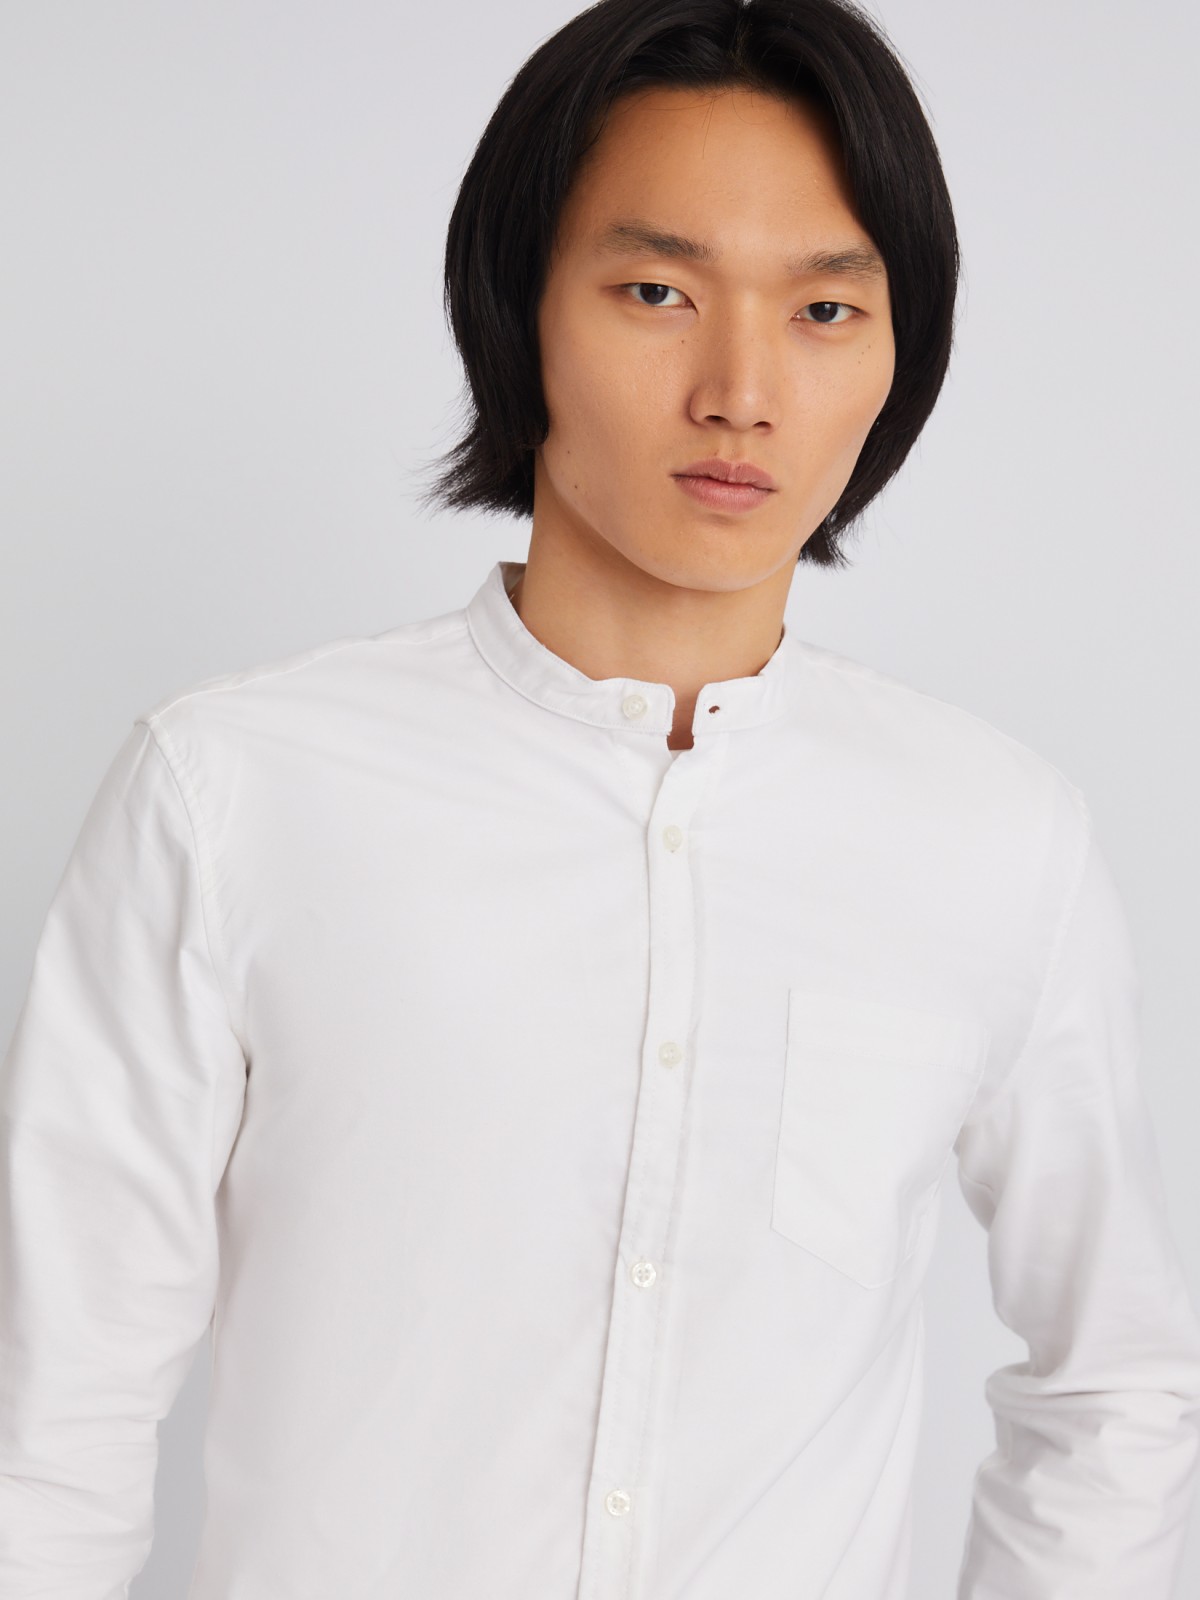 Офисная рубашка с воротником-стойкой и длинным рукавом zolla 21232214R043, цвет белый, размер S - фото 5